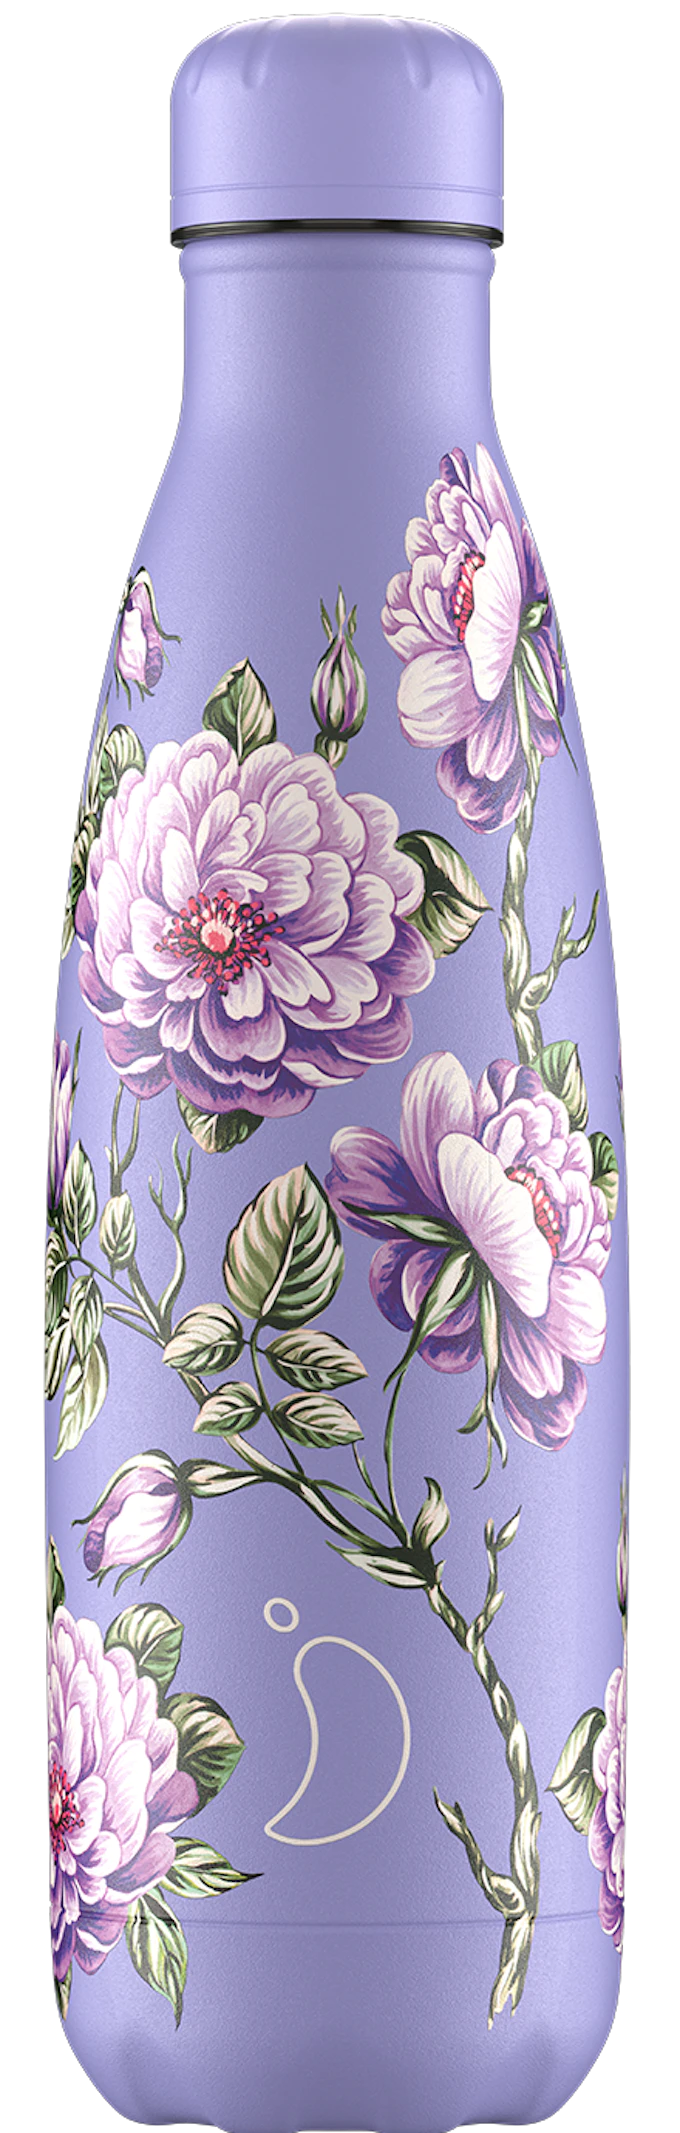 Chilly Bottle 500ml Floral Violet Roses